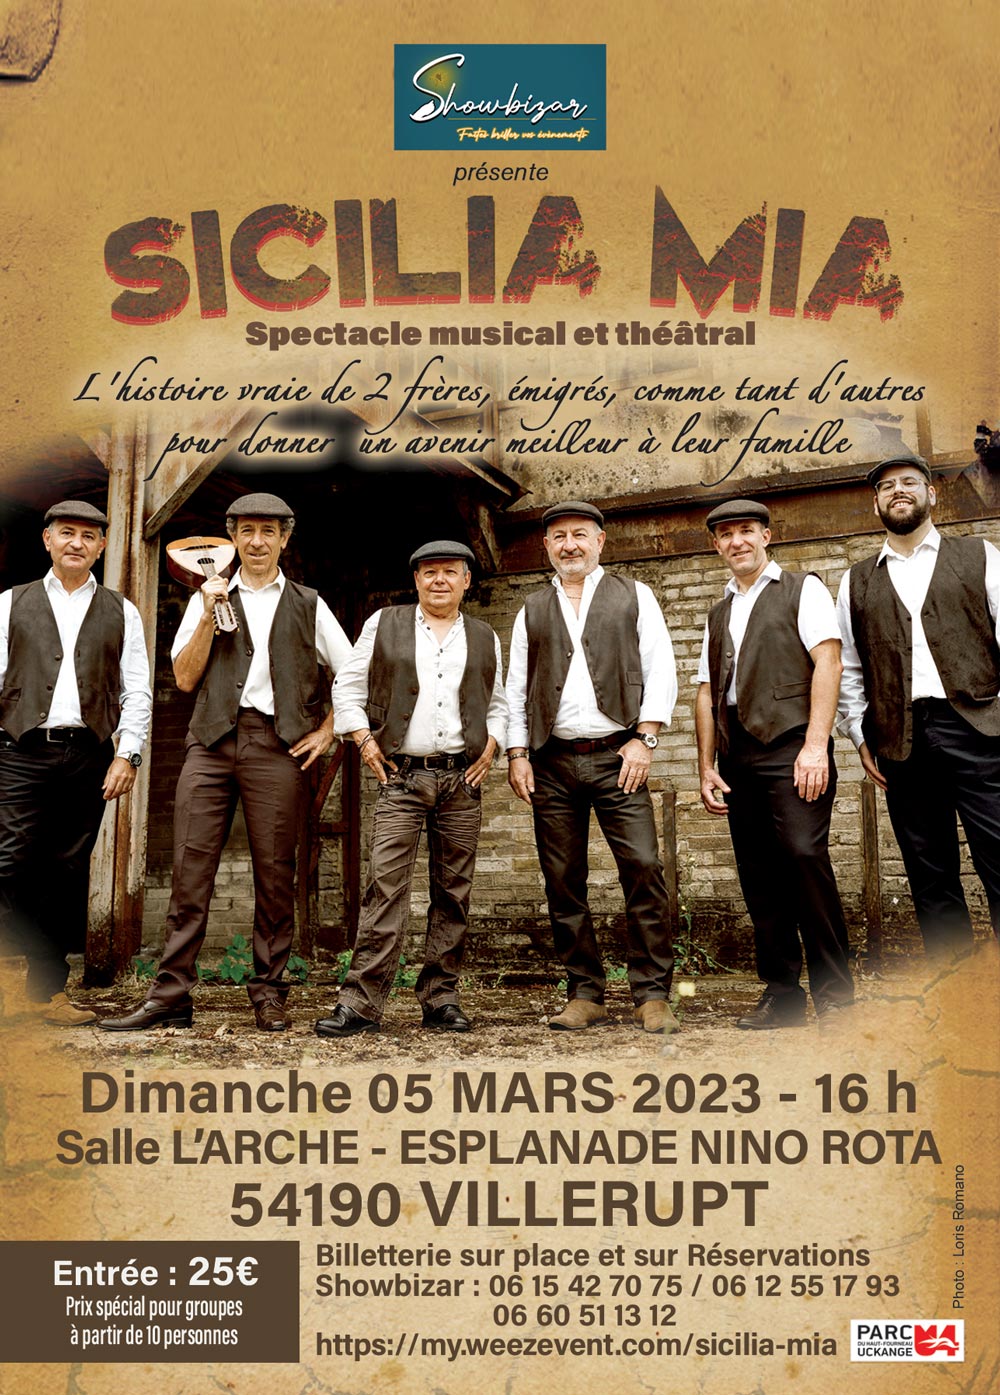 Spectacle Musical Théâtral Sicilia Mia dimanche 05 mars 2023 16h00 Villerupt